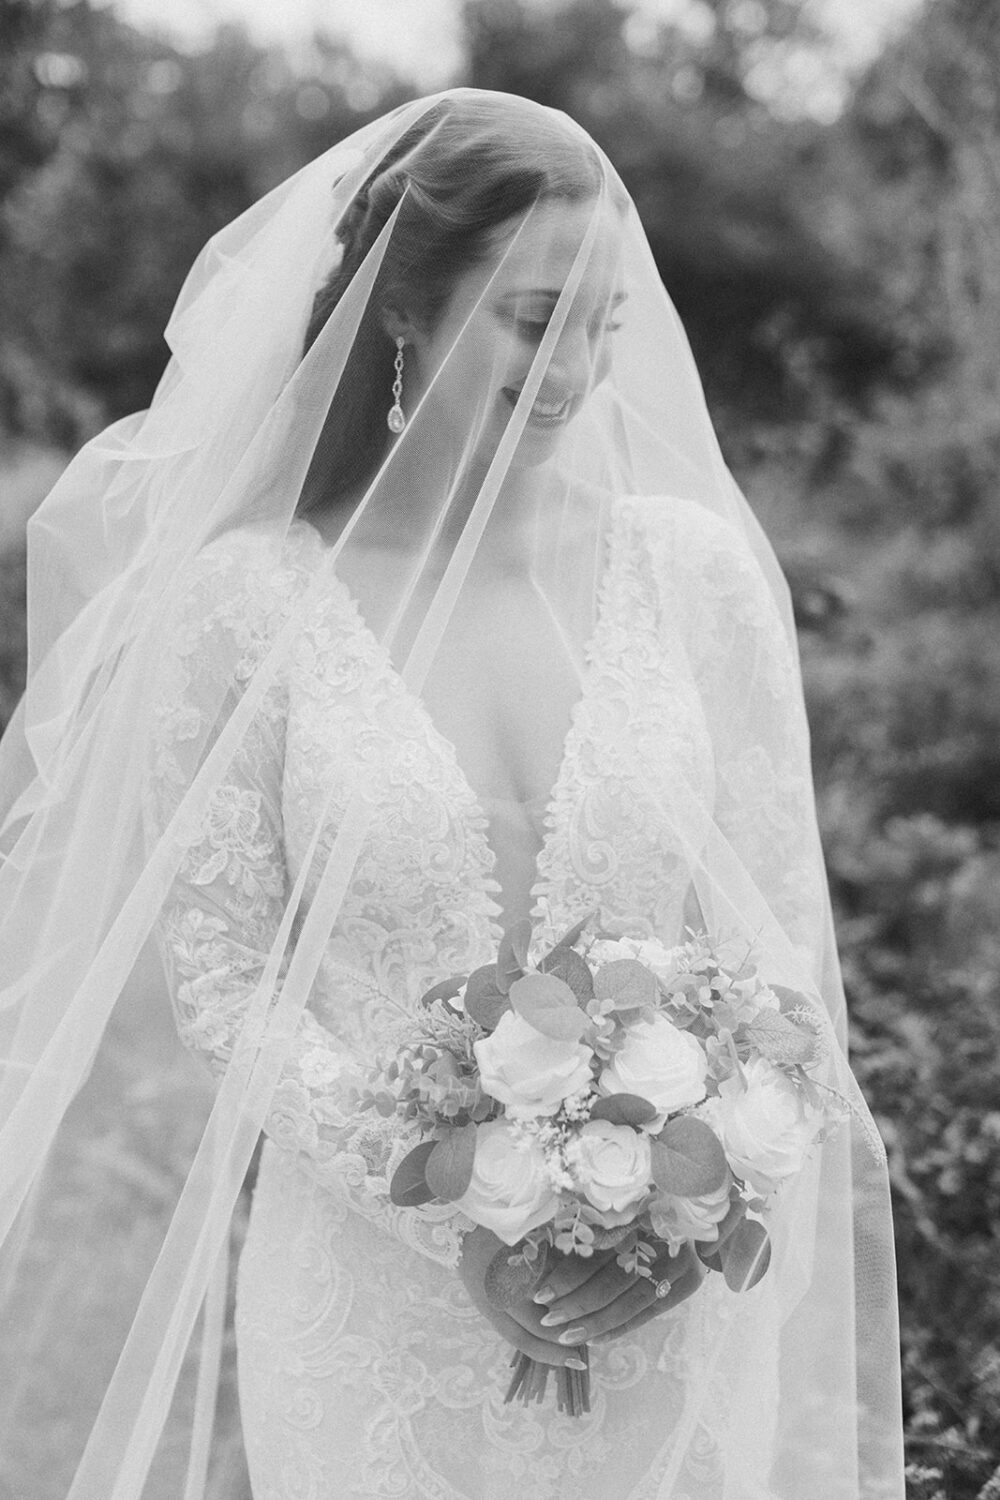 bride holds white rose wedding bouquet under wedding veil 